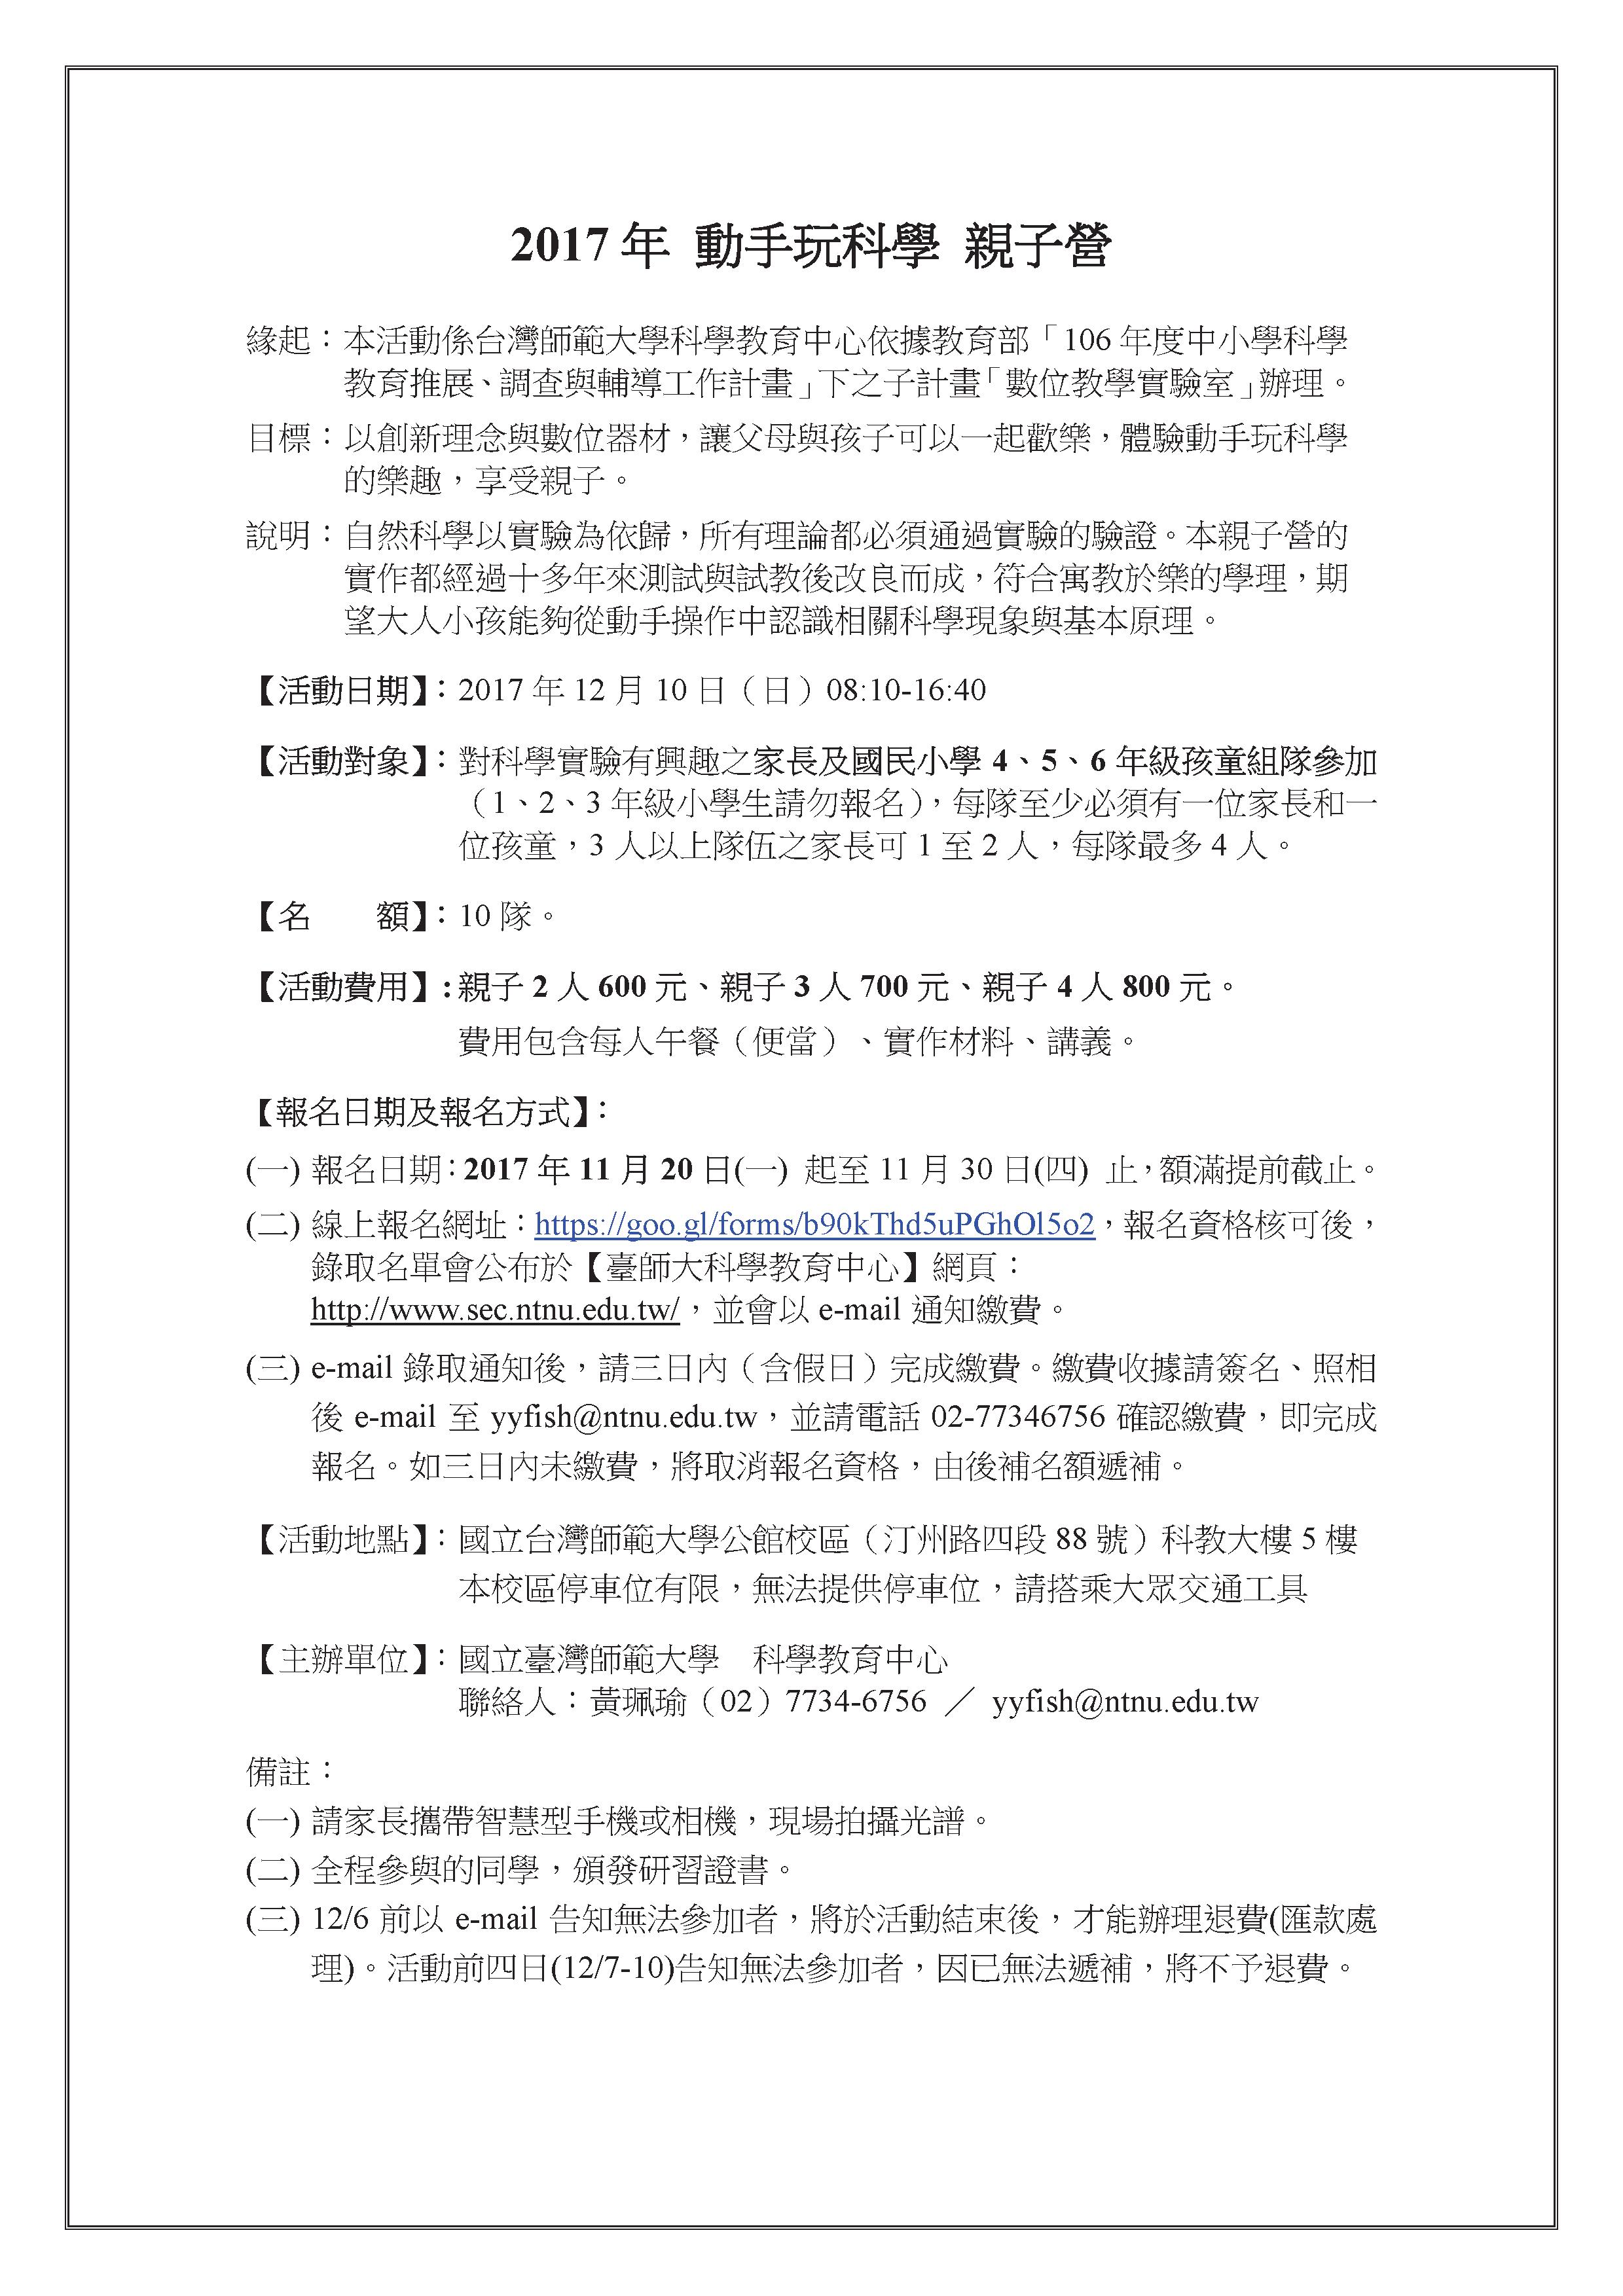 2017年臺灣師範大學【動手玩科學親子營】.pdf.jpeg